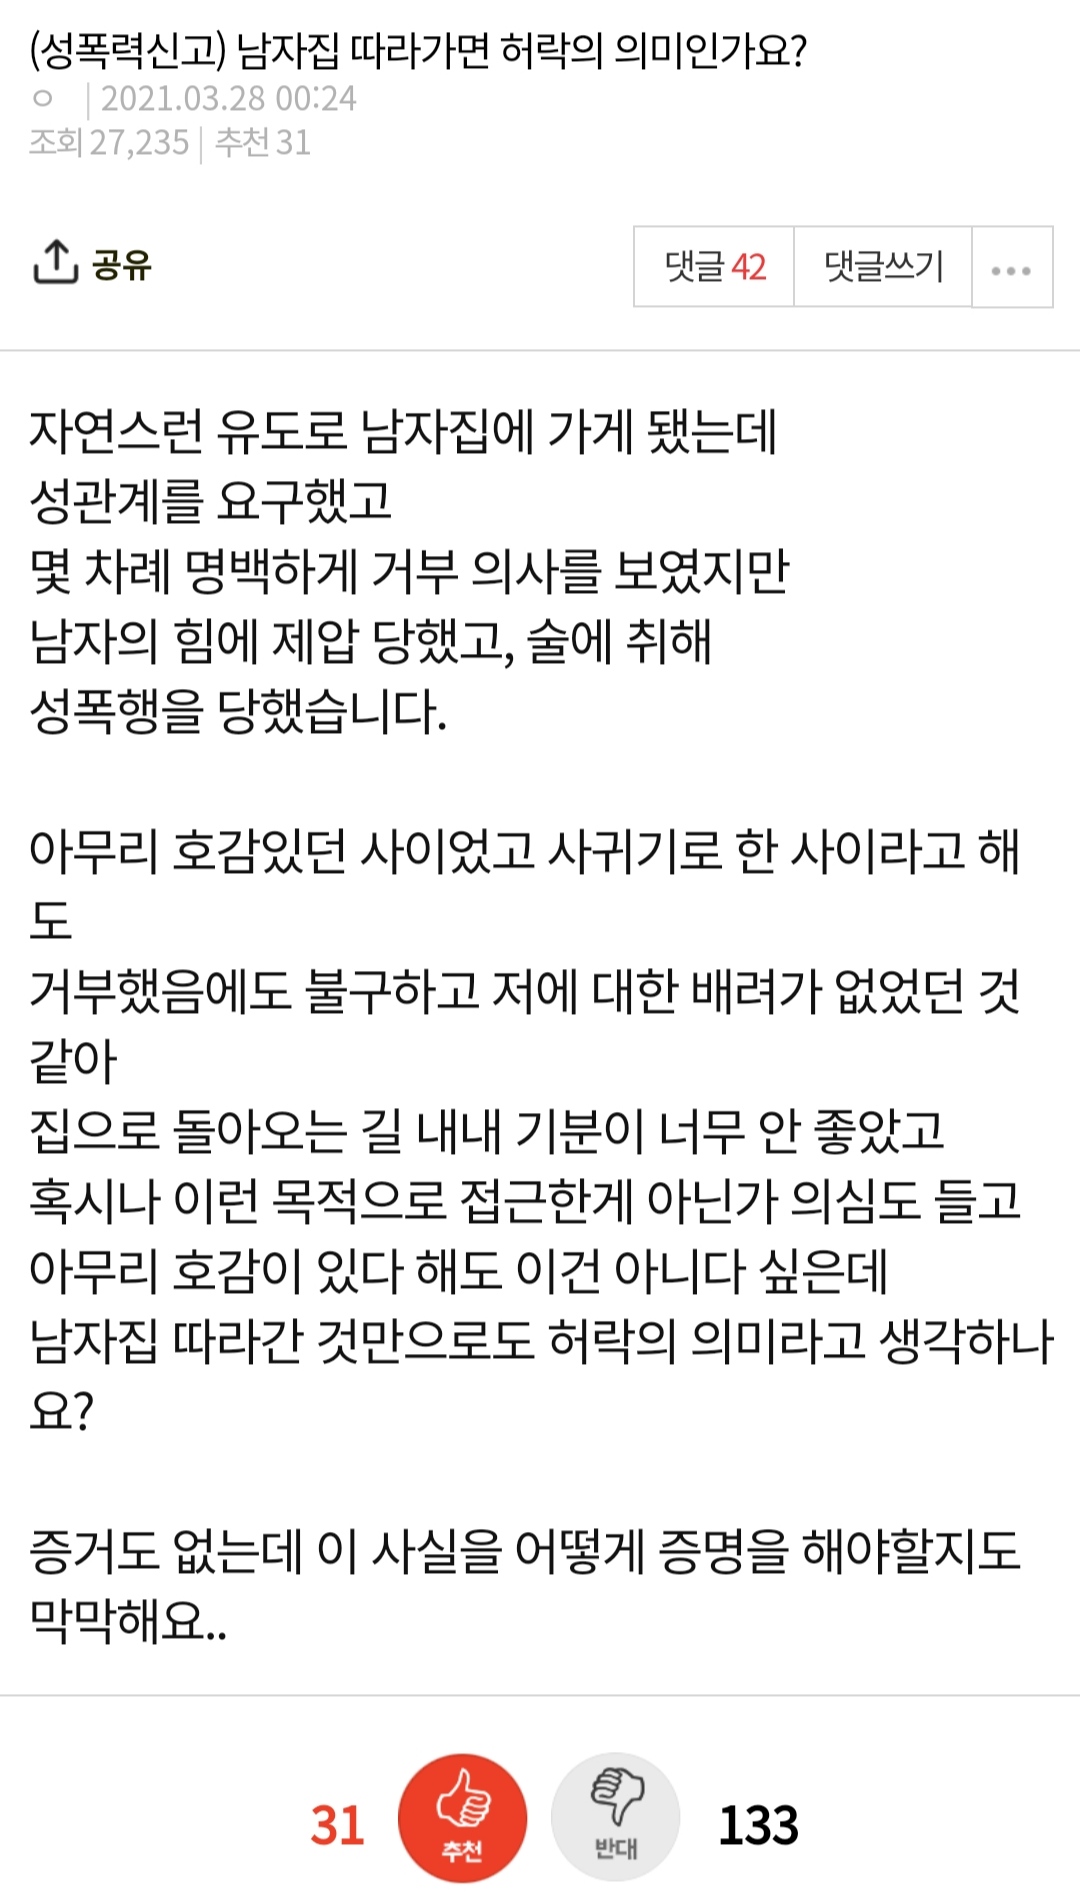 ""남자집 따라가면 성행위 허락인가요?"".jpg